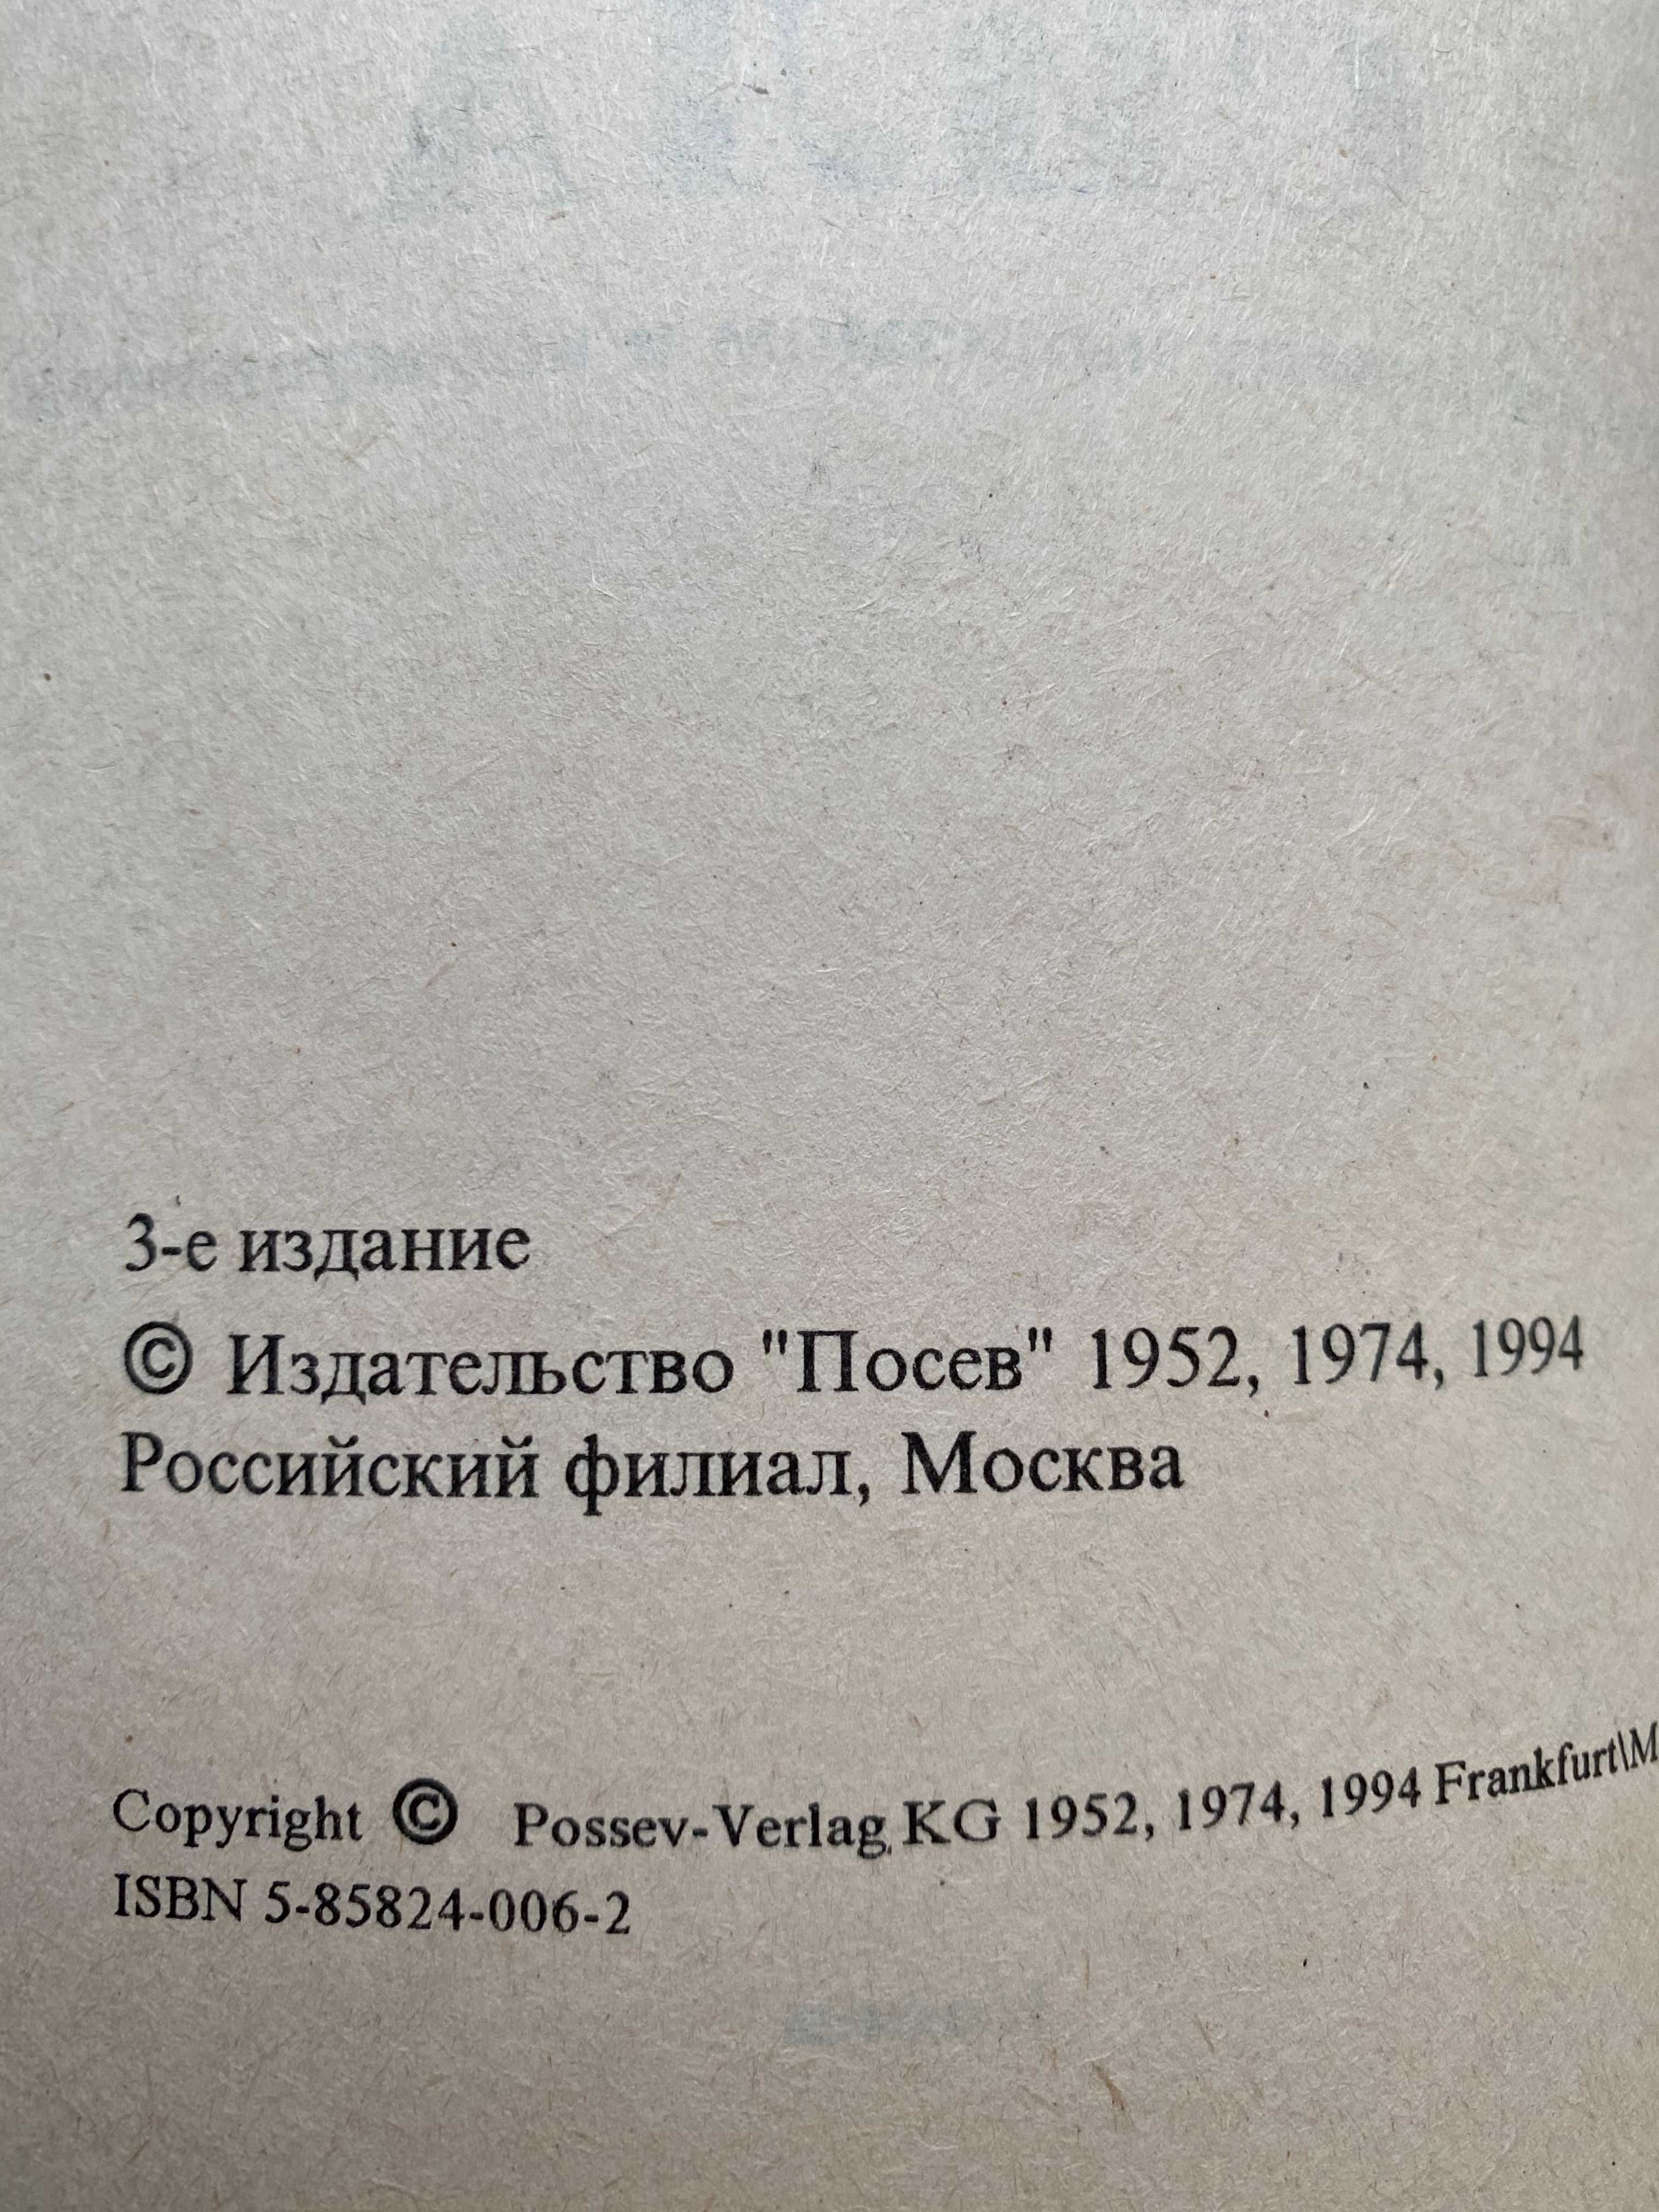 Казанцев А. Третья сила. Изд. "Посев" 1994 г